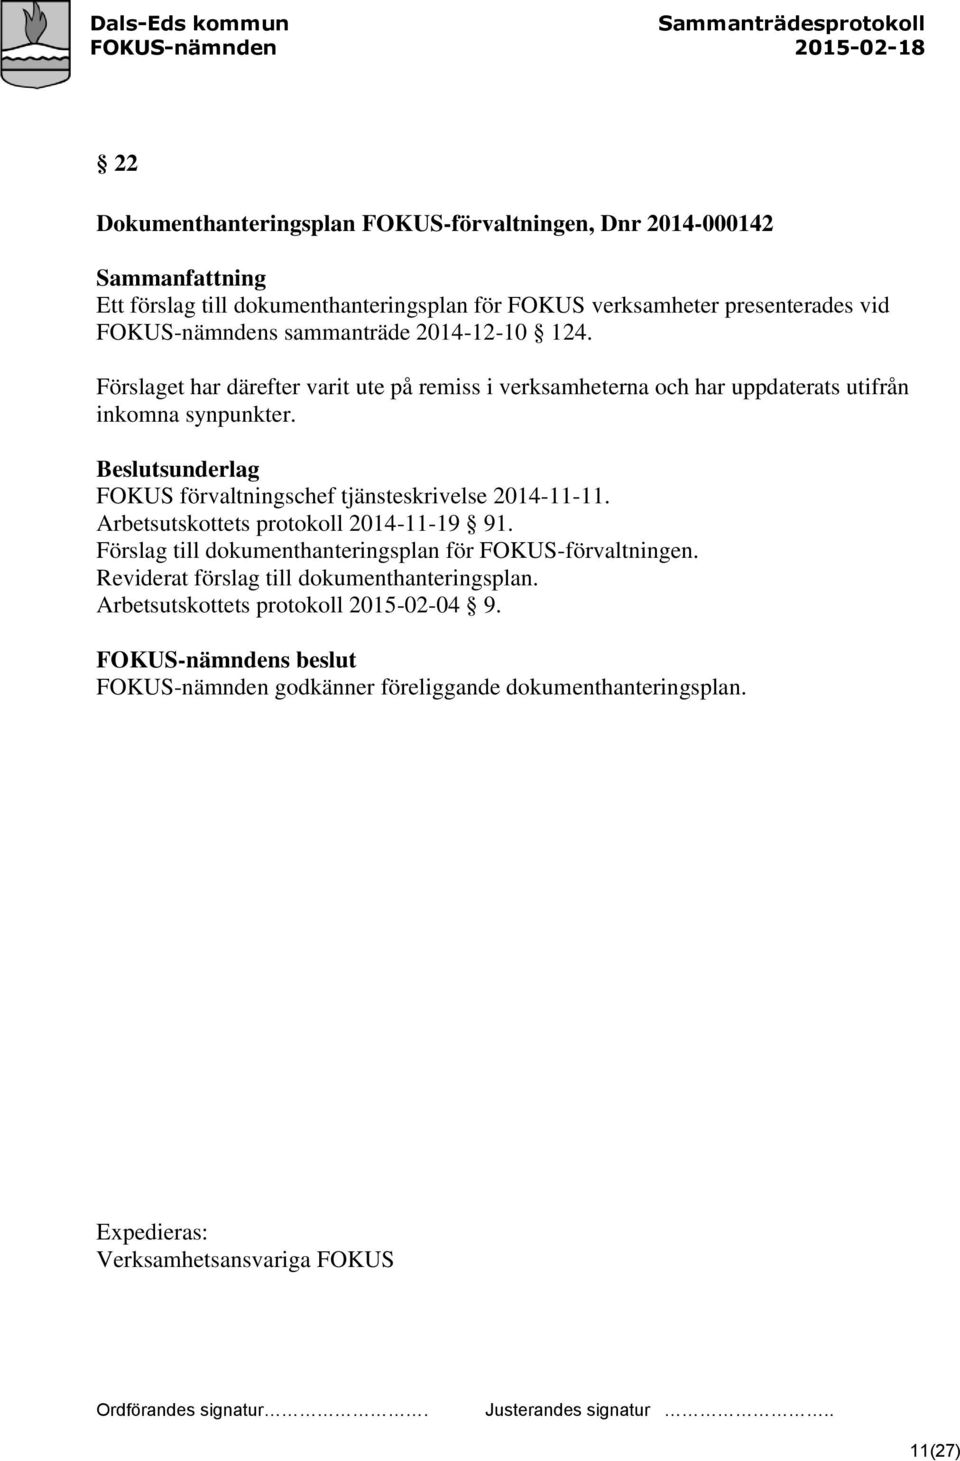 FOKUS förvaltningschef tjänsteskrivelse 2014-11-11. Arbetsutskottets protokoll 2014-11-19 91. Förslag till dokumenthanteringsplan för FOKUS-förvaltningen.